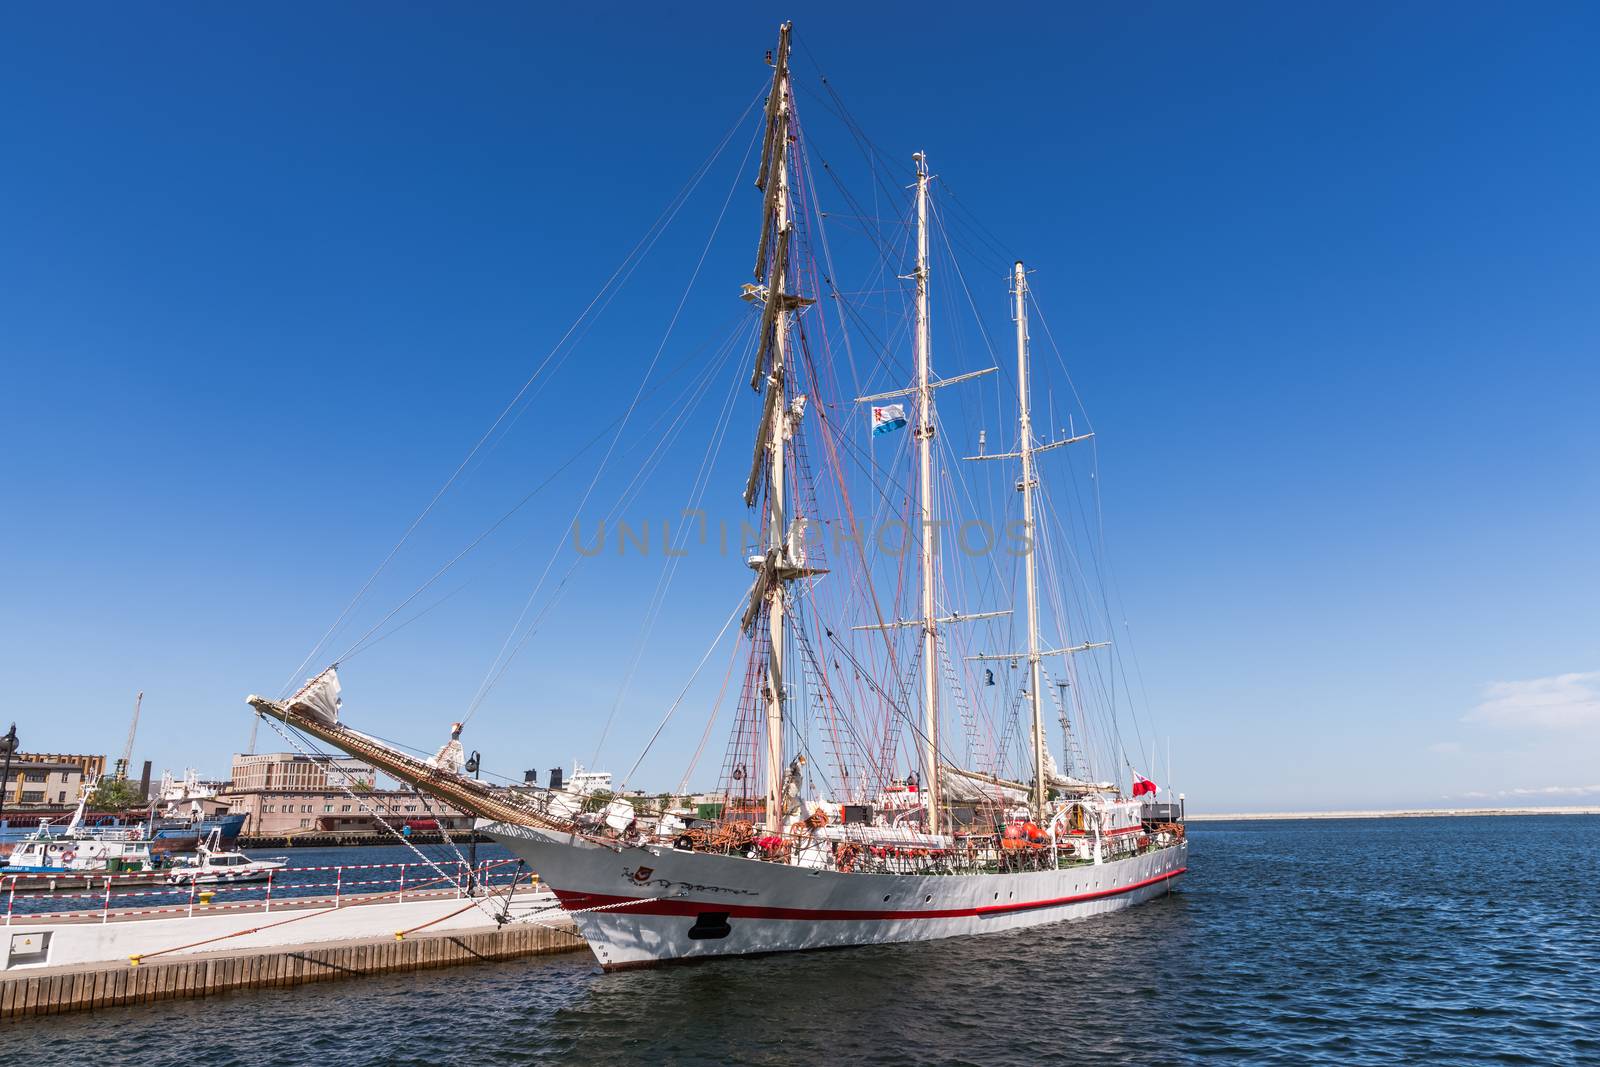 Sailboat in the Port of Gdynia by pawel_szczepanski